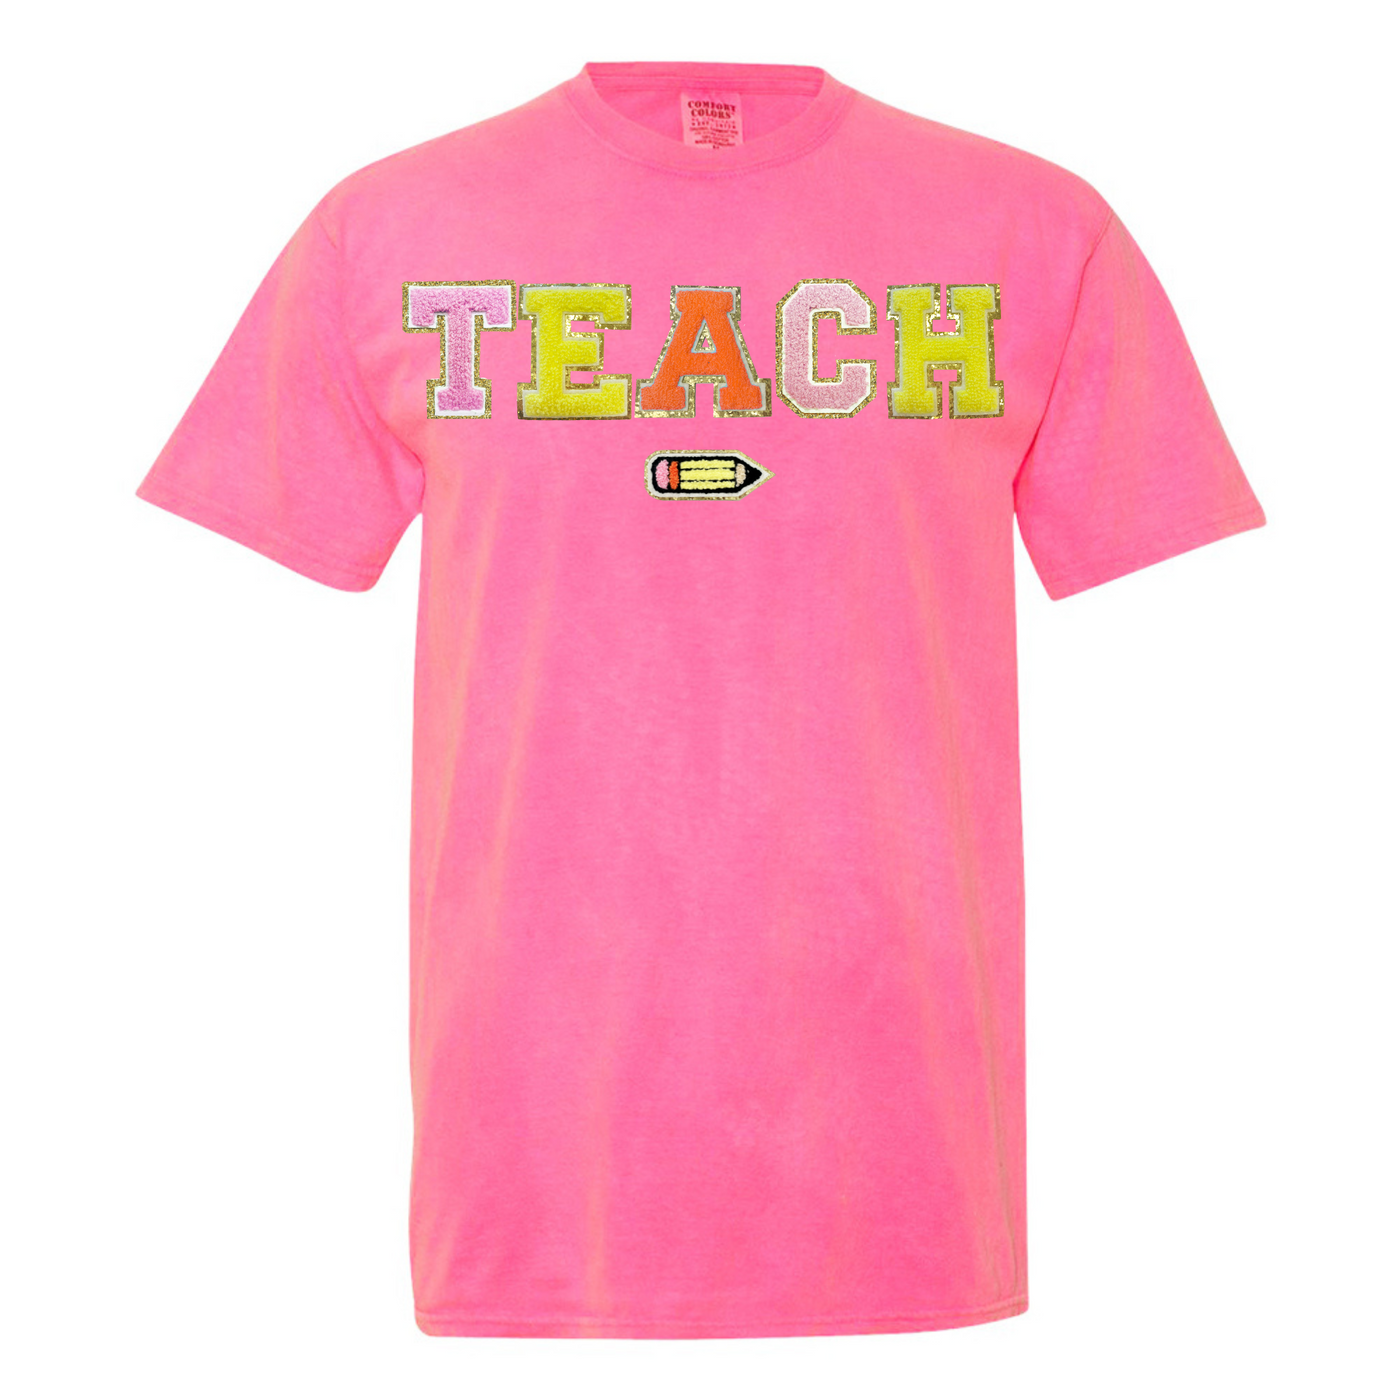 Teach Pencil Letter Patch T-Shirt